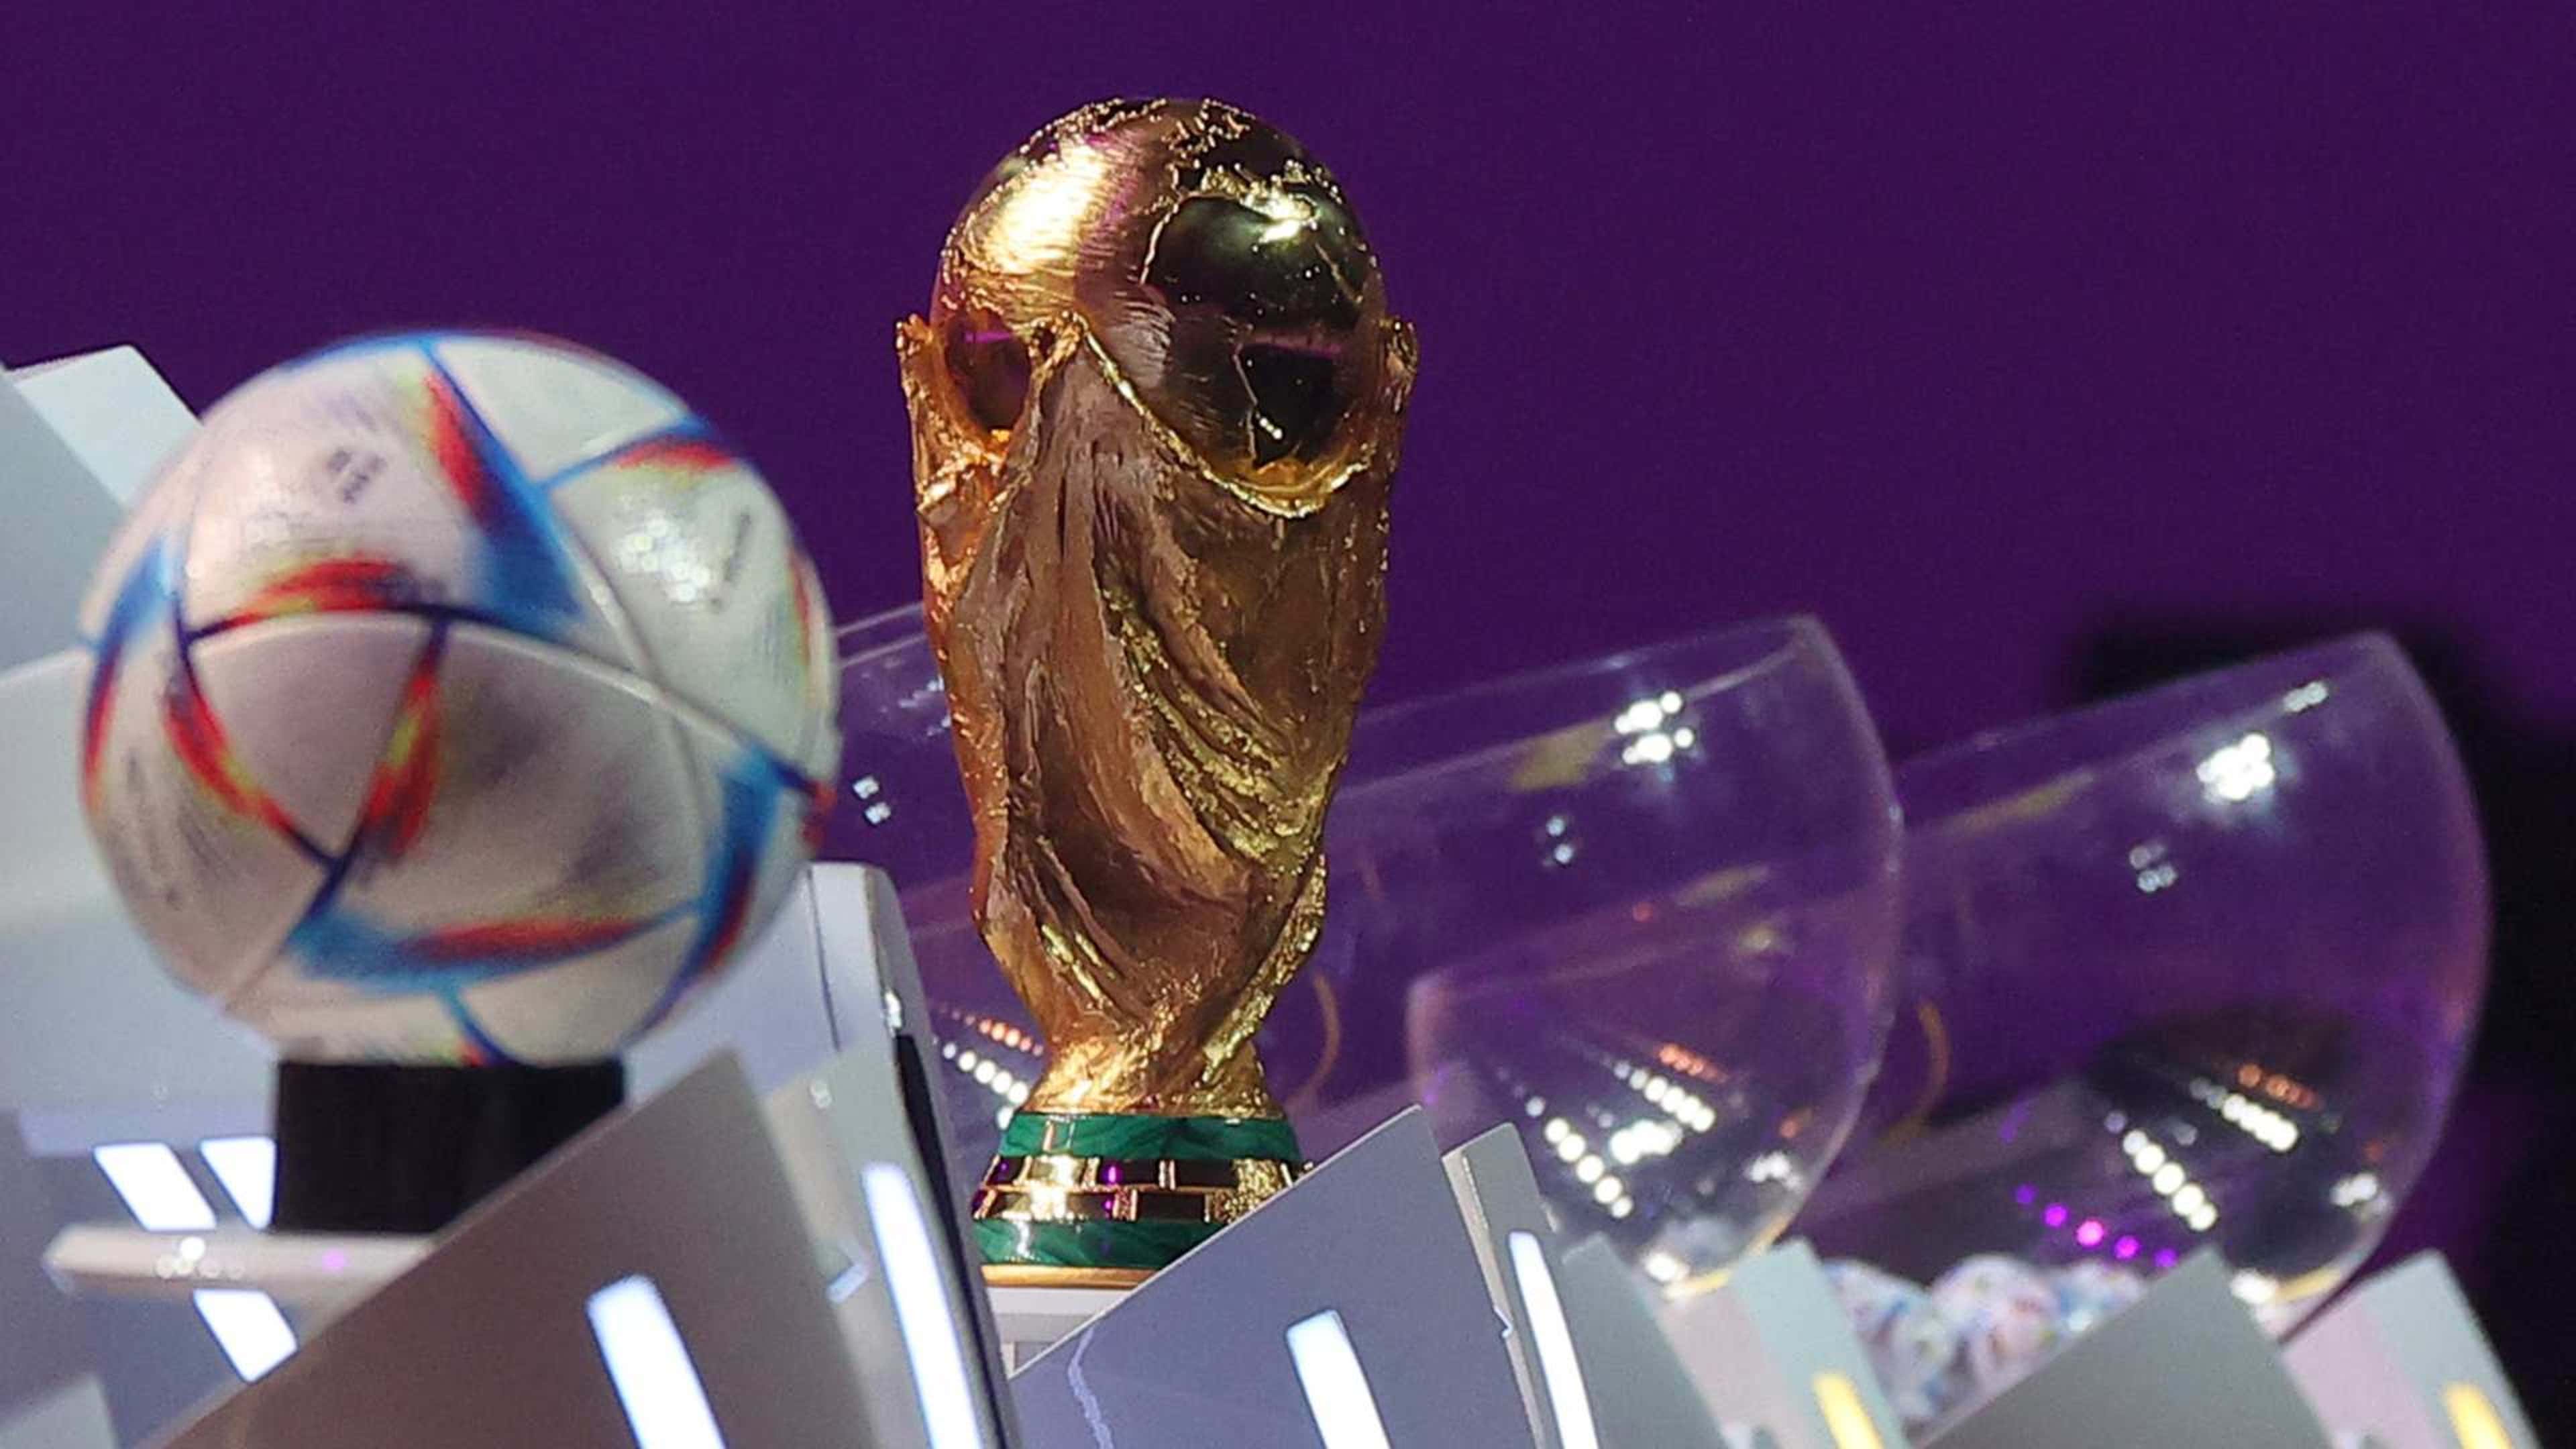 Quartas de final da Copa do Mundo: veja jogos, datas, horários e